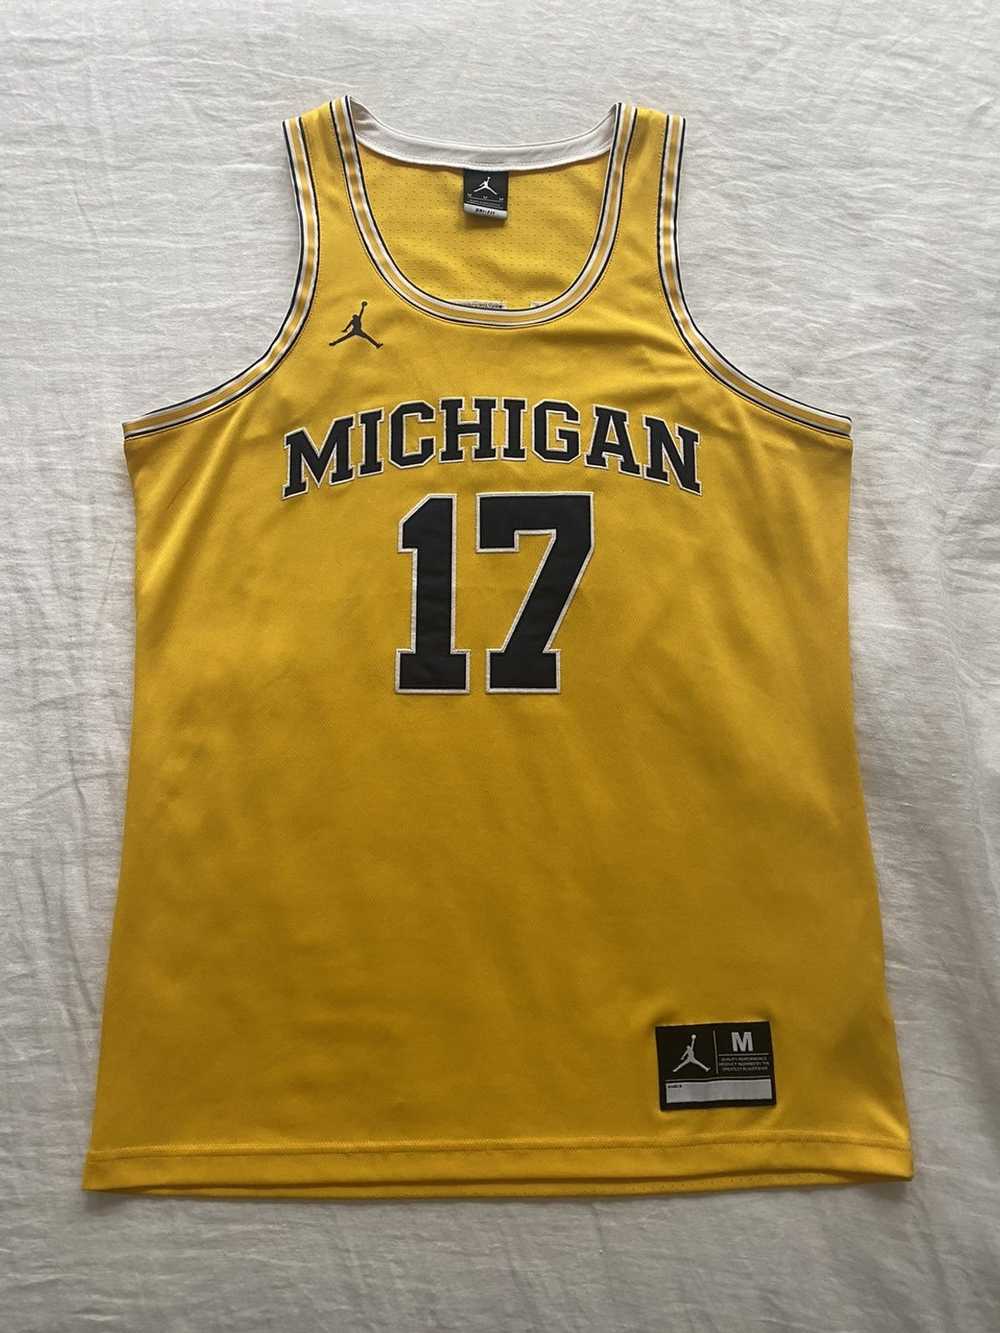 Jordan Brand × Nike Michigan Jersey - image 1